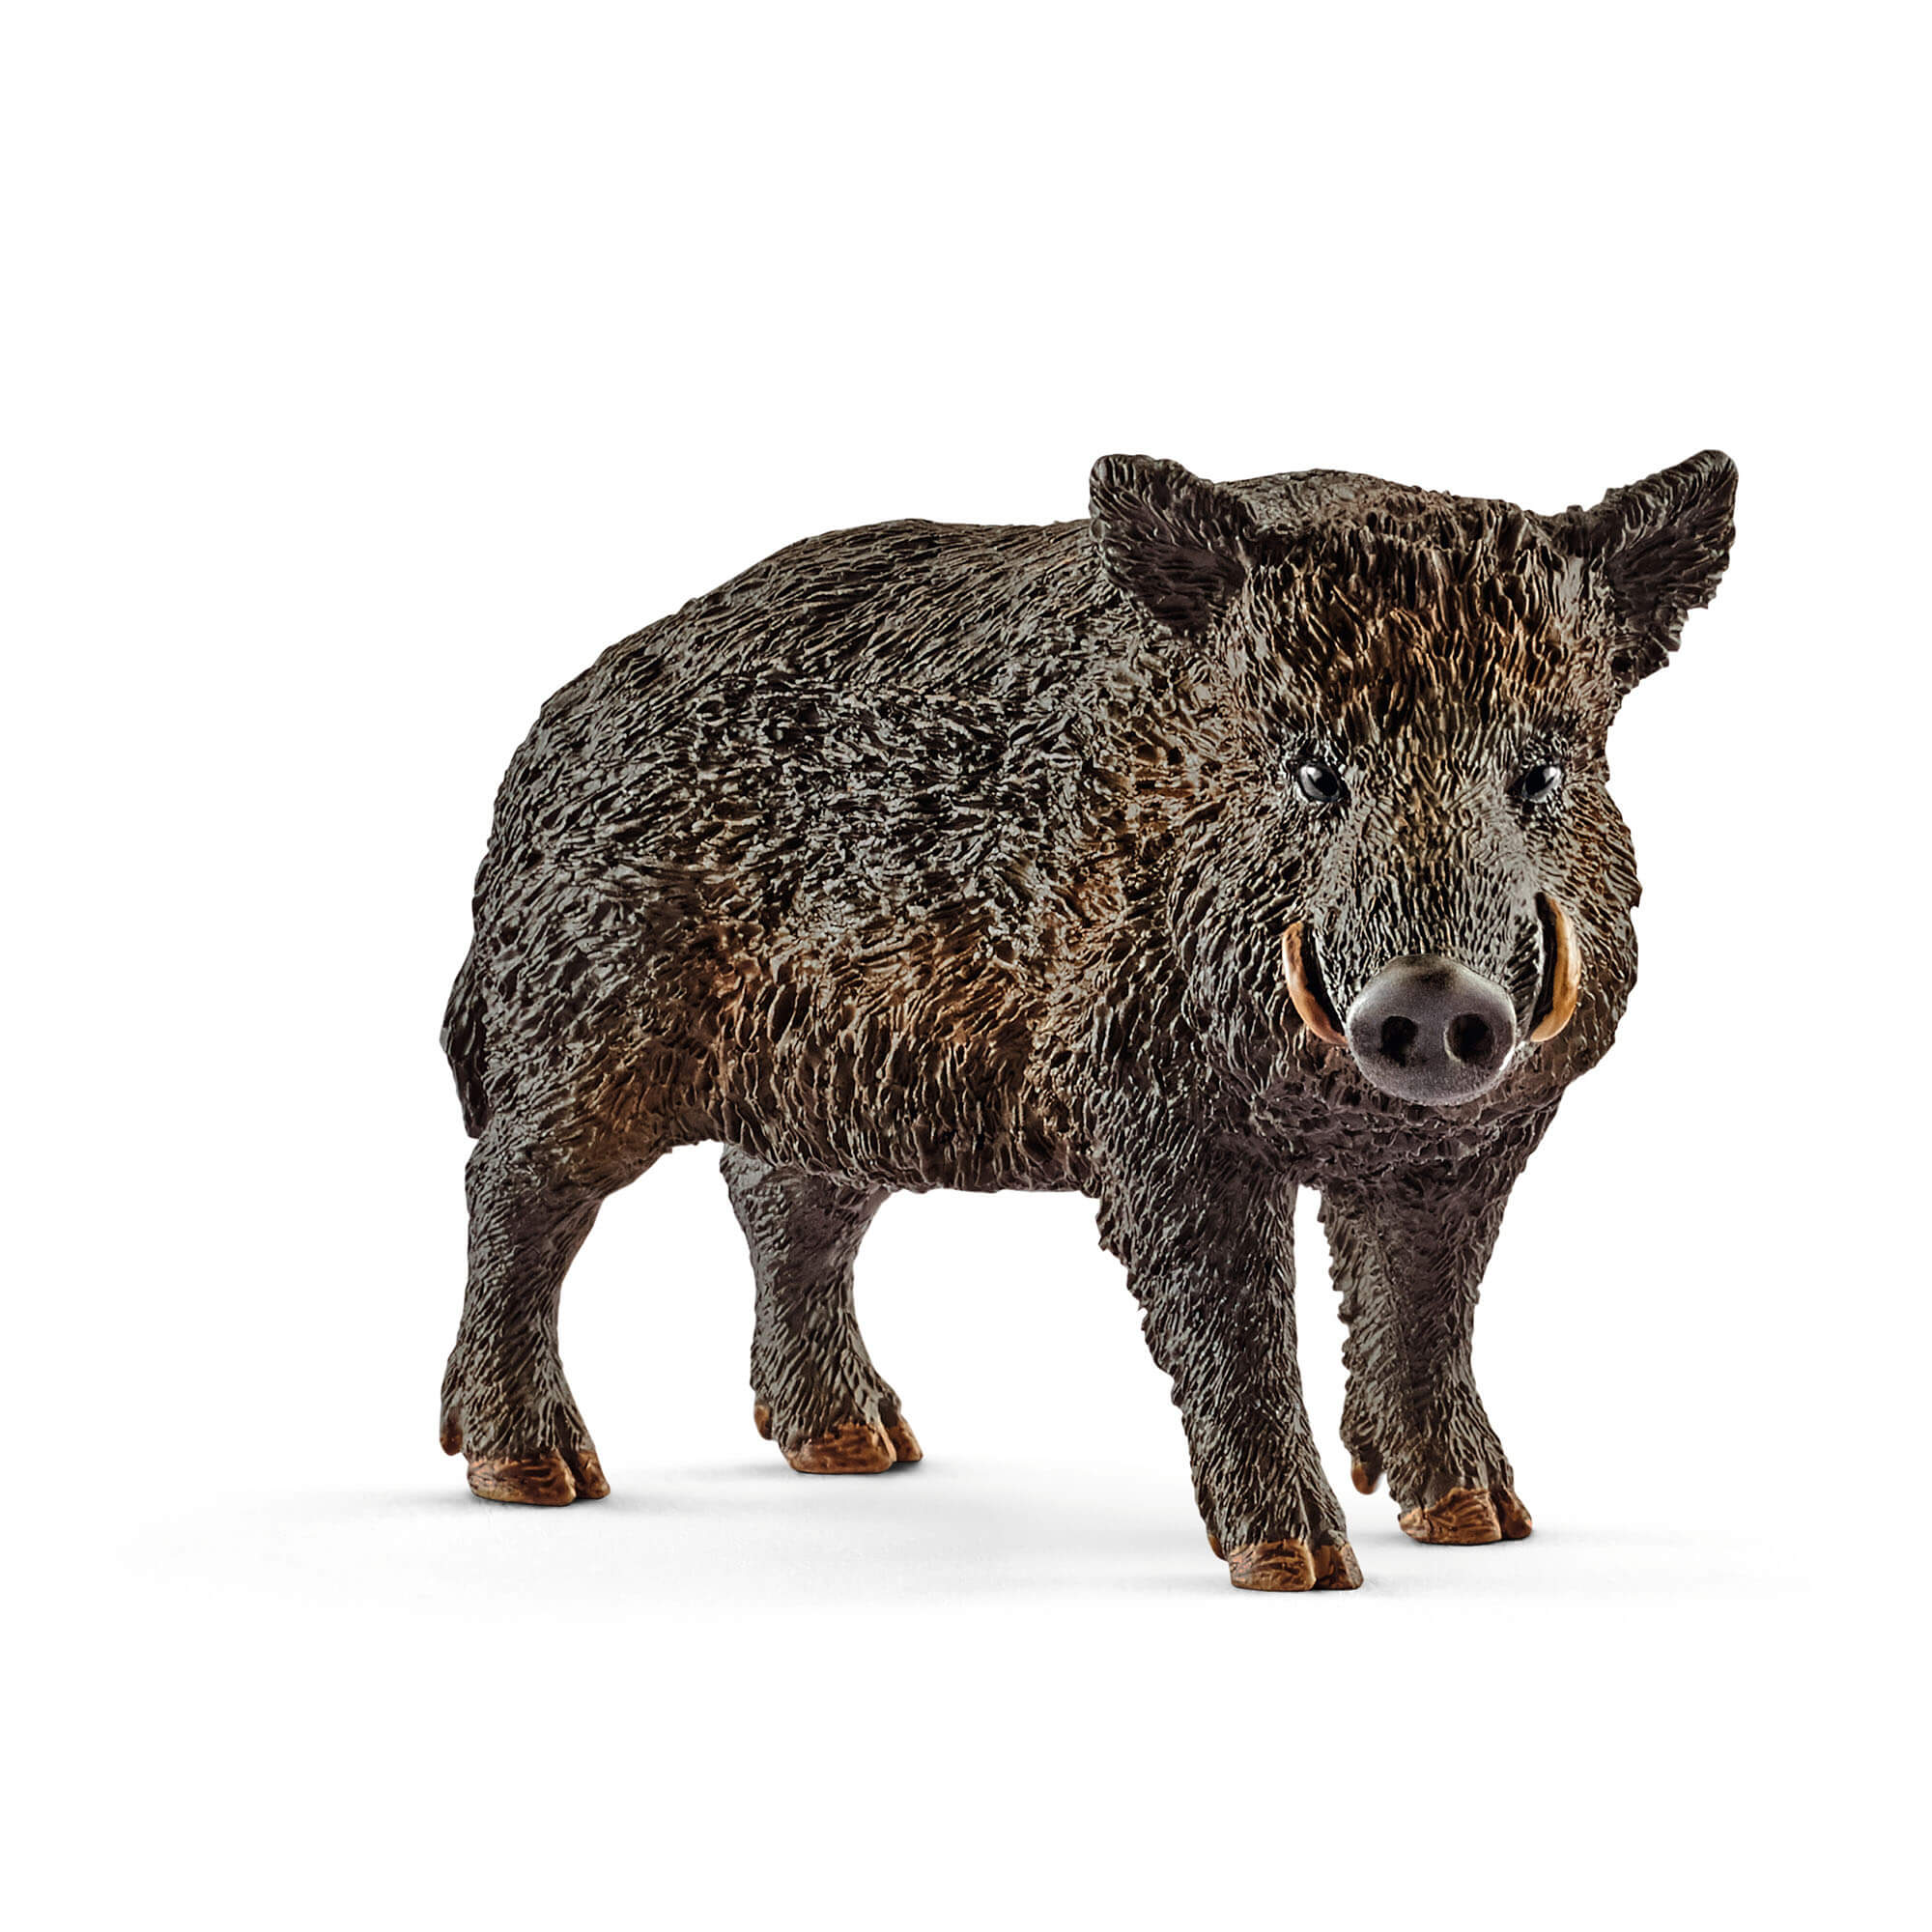 Schleich Wild Life Wild Boar Animal Figure